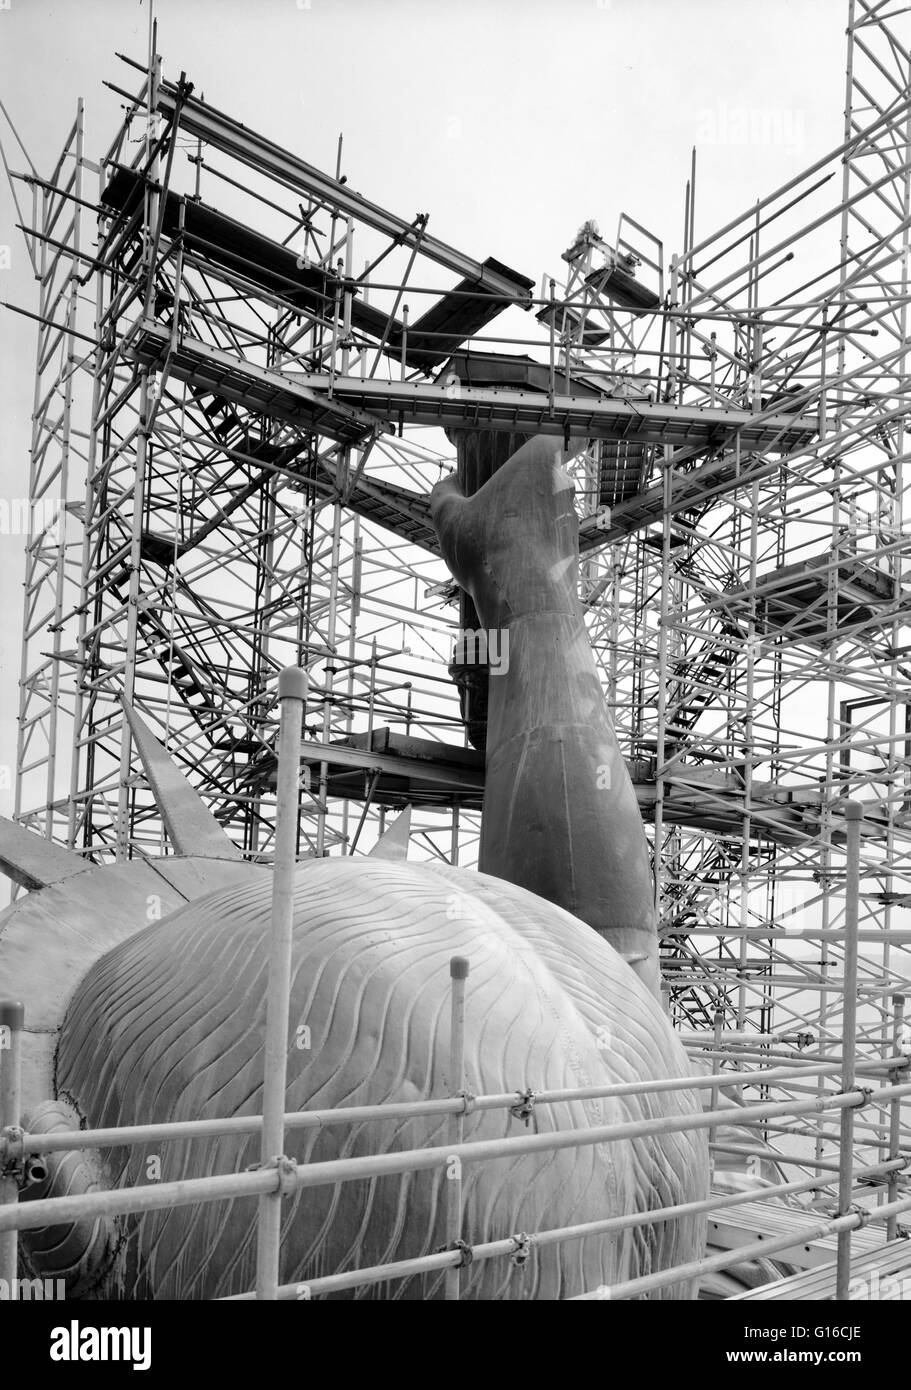 Unter dem Titel: "Blick Südost zeigt Rückseite Kopf und Fackel Arms, nachdem die Flamme entfernt wurde, März 1985." Die Freiheitsstatue ist eine kolossale neoklassische Skulptur auf Liberty Island im New Yorker Hafen, entworfen von Frédéric Bartholdi und engagierten o Stockfoto